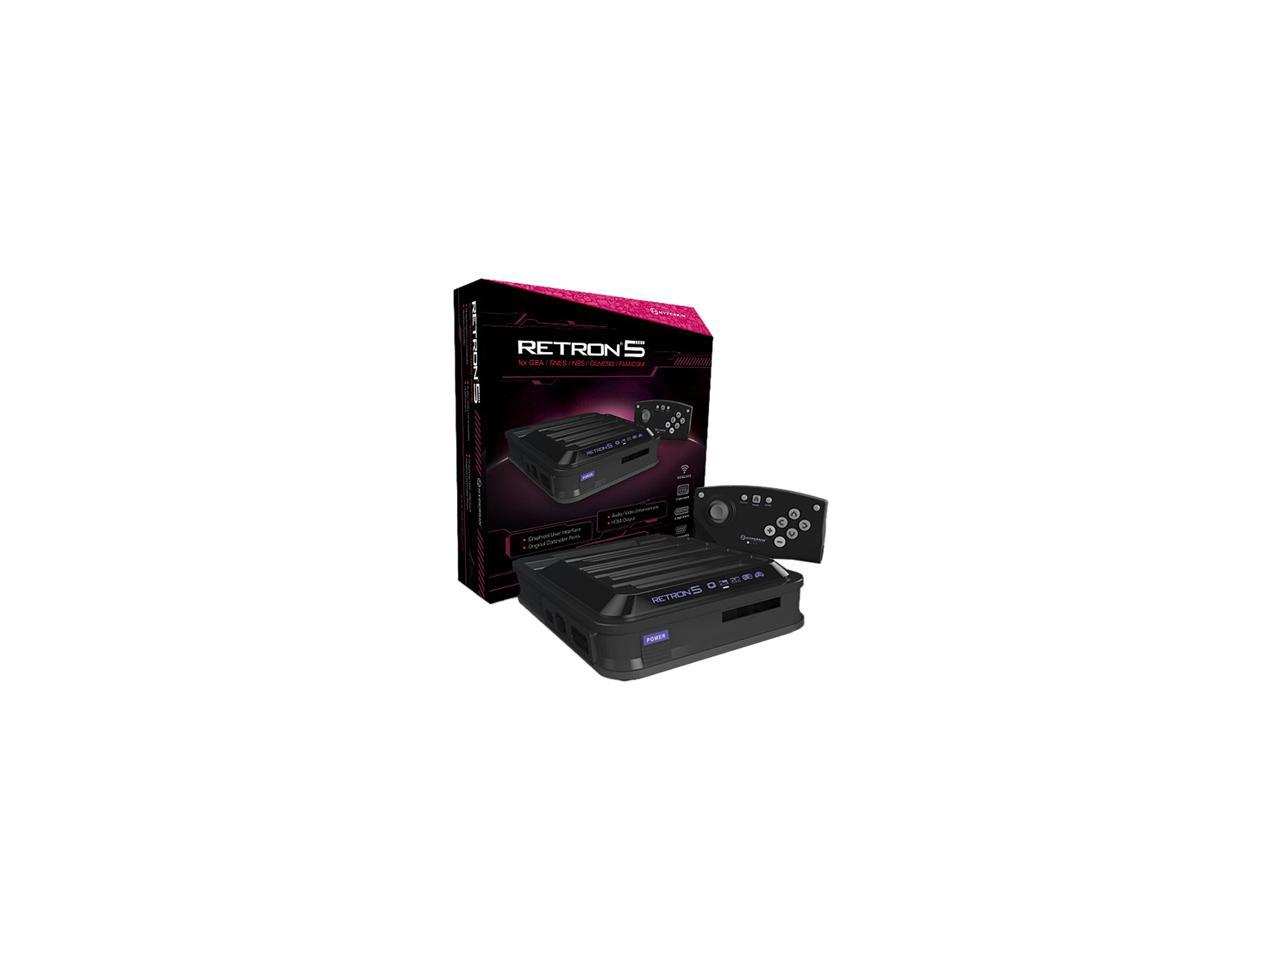  Hyperkin RetroN 5 Gaming Console - Black - Newegg.com